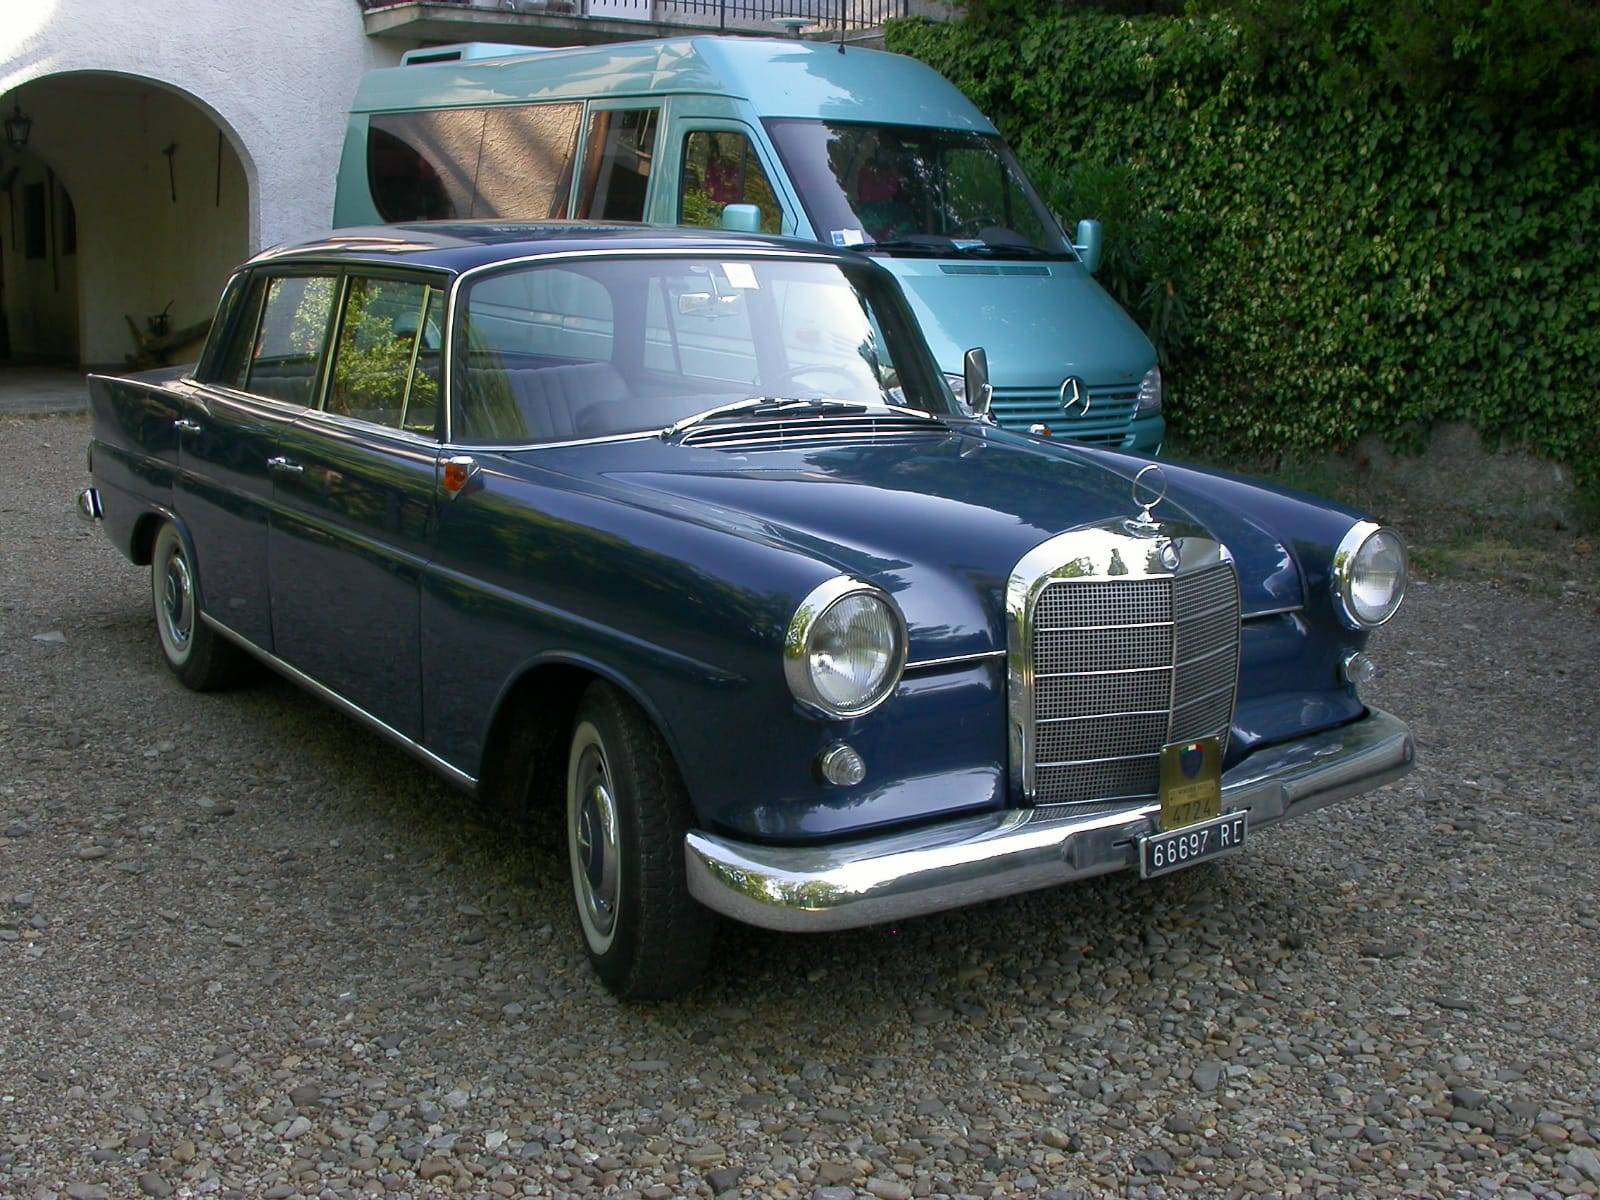 MercedesBenz 190 b (1962) für EUR 11.200 kaufen